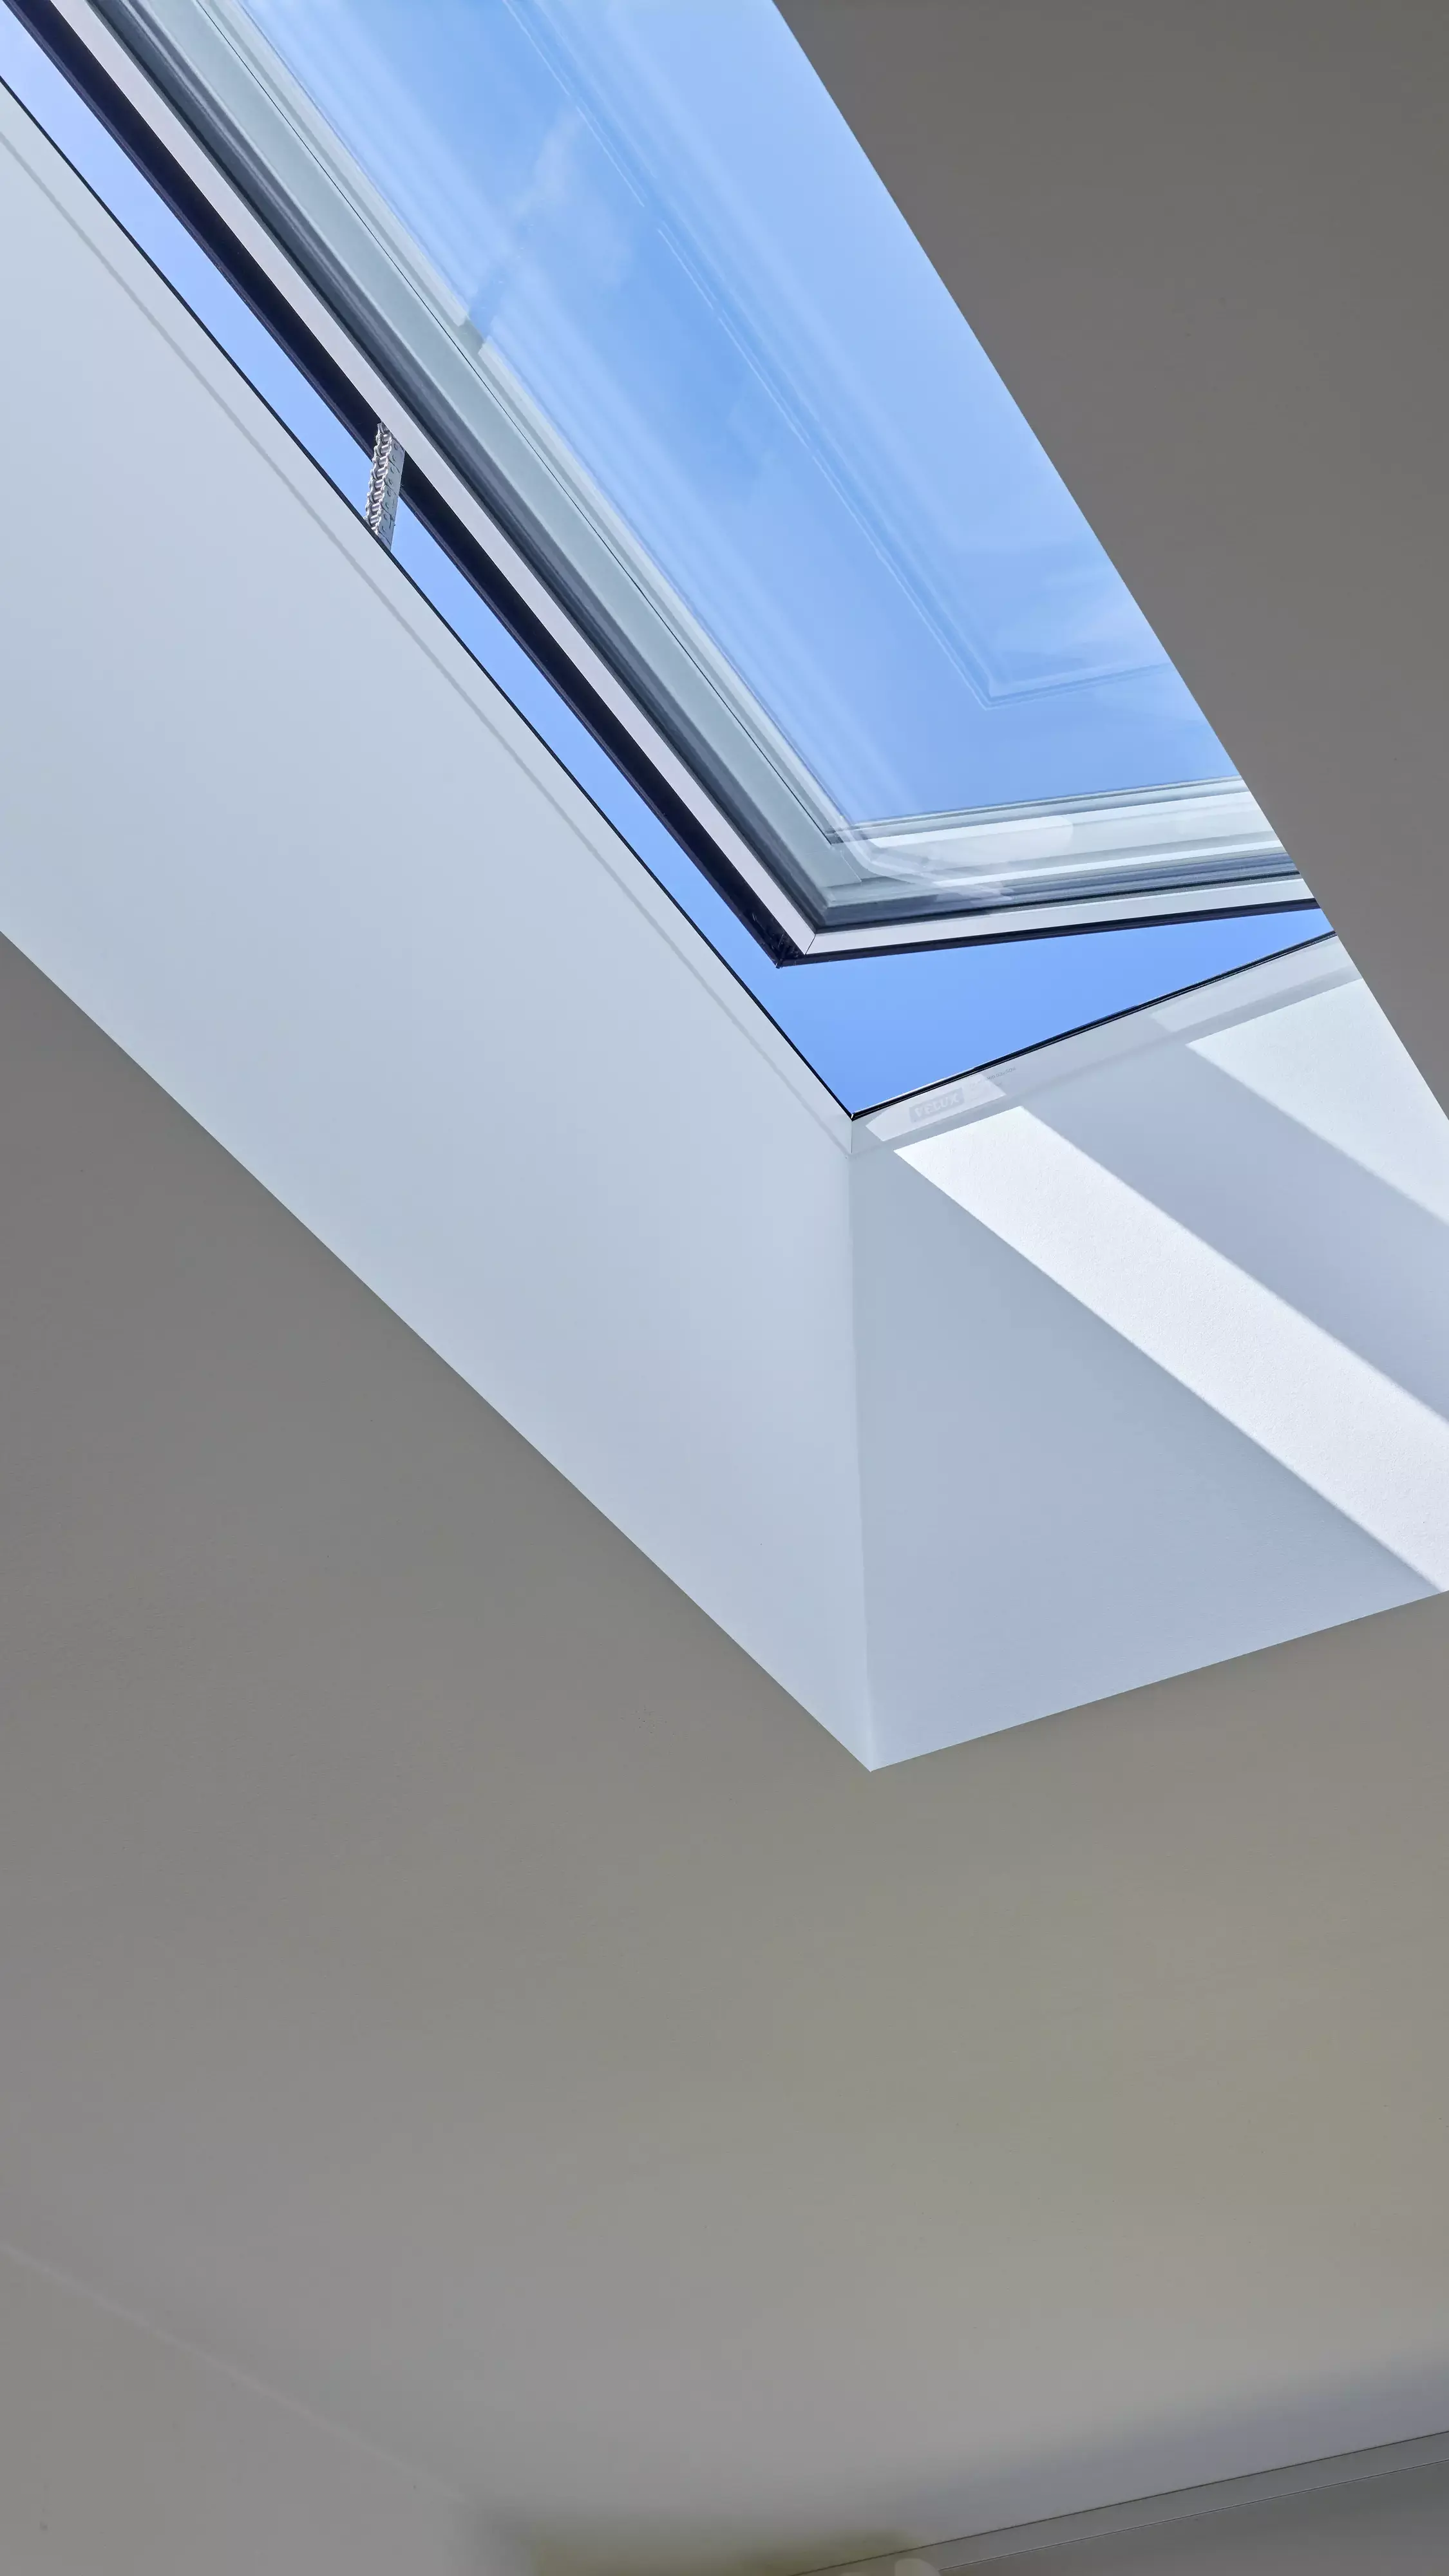 Fenêtre de toit VELUX dans une pièce minimaliste, inondant l'espace de lumière naturelle.